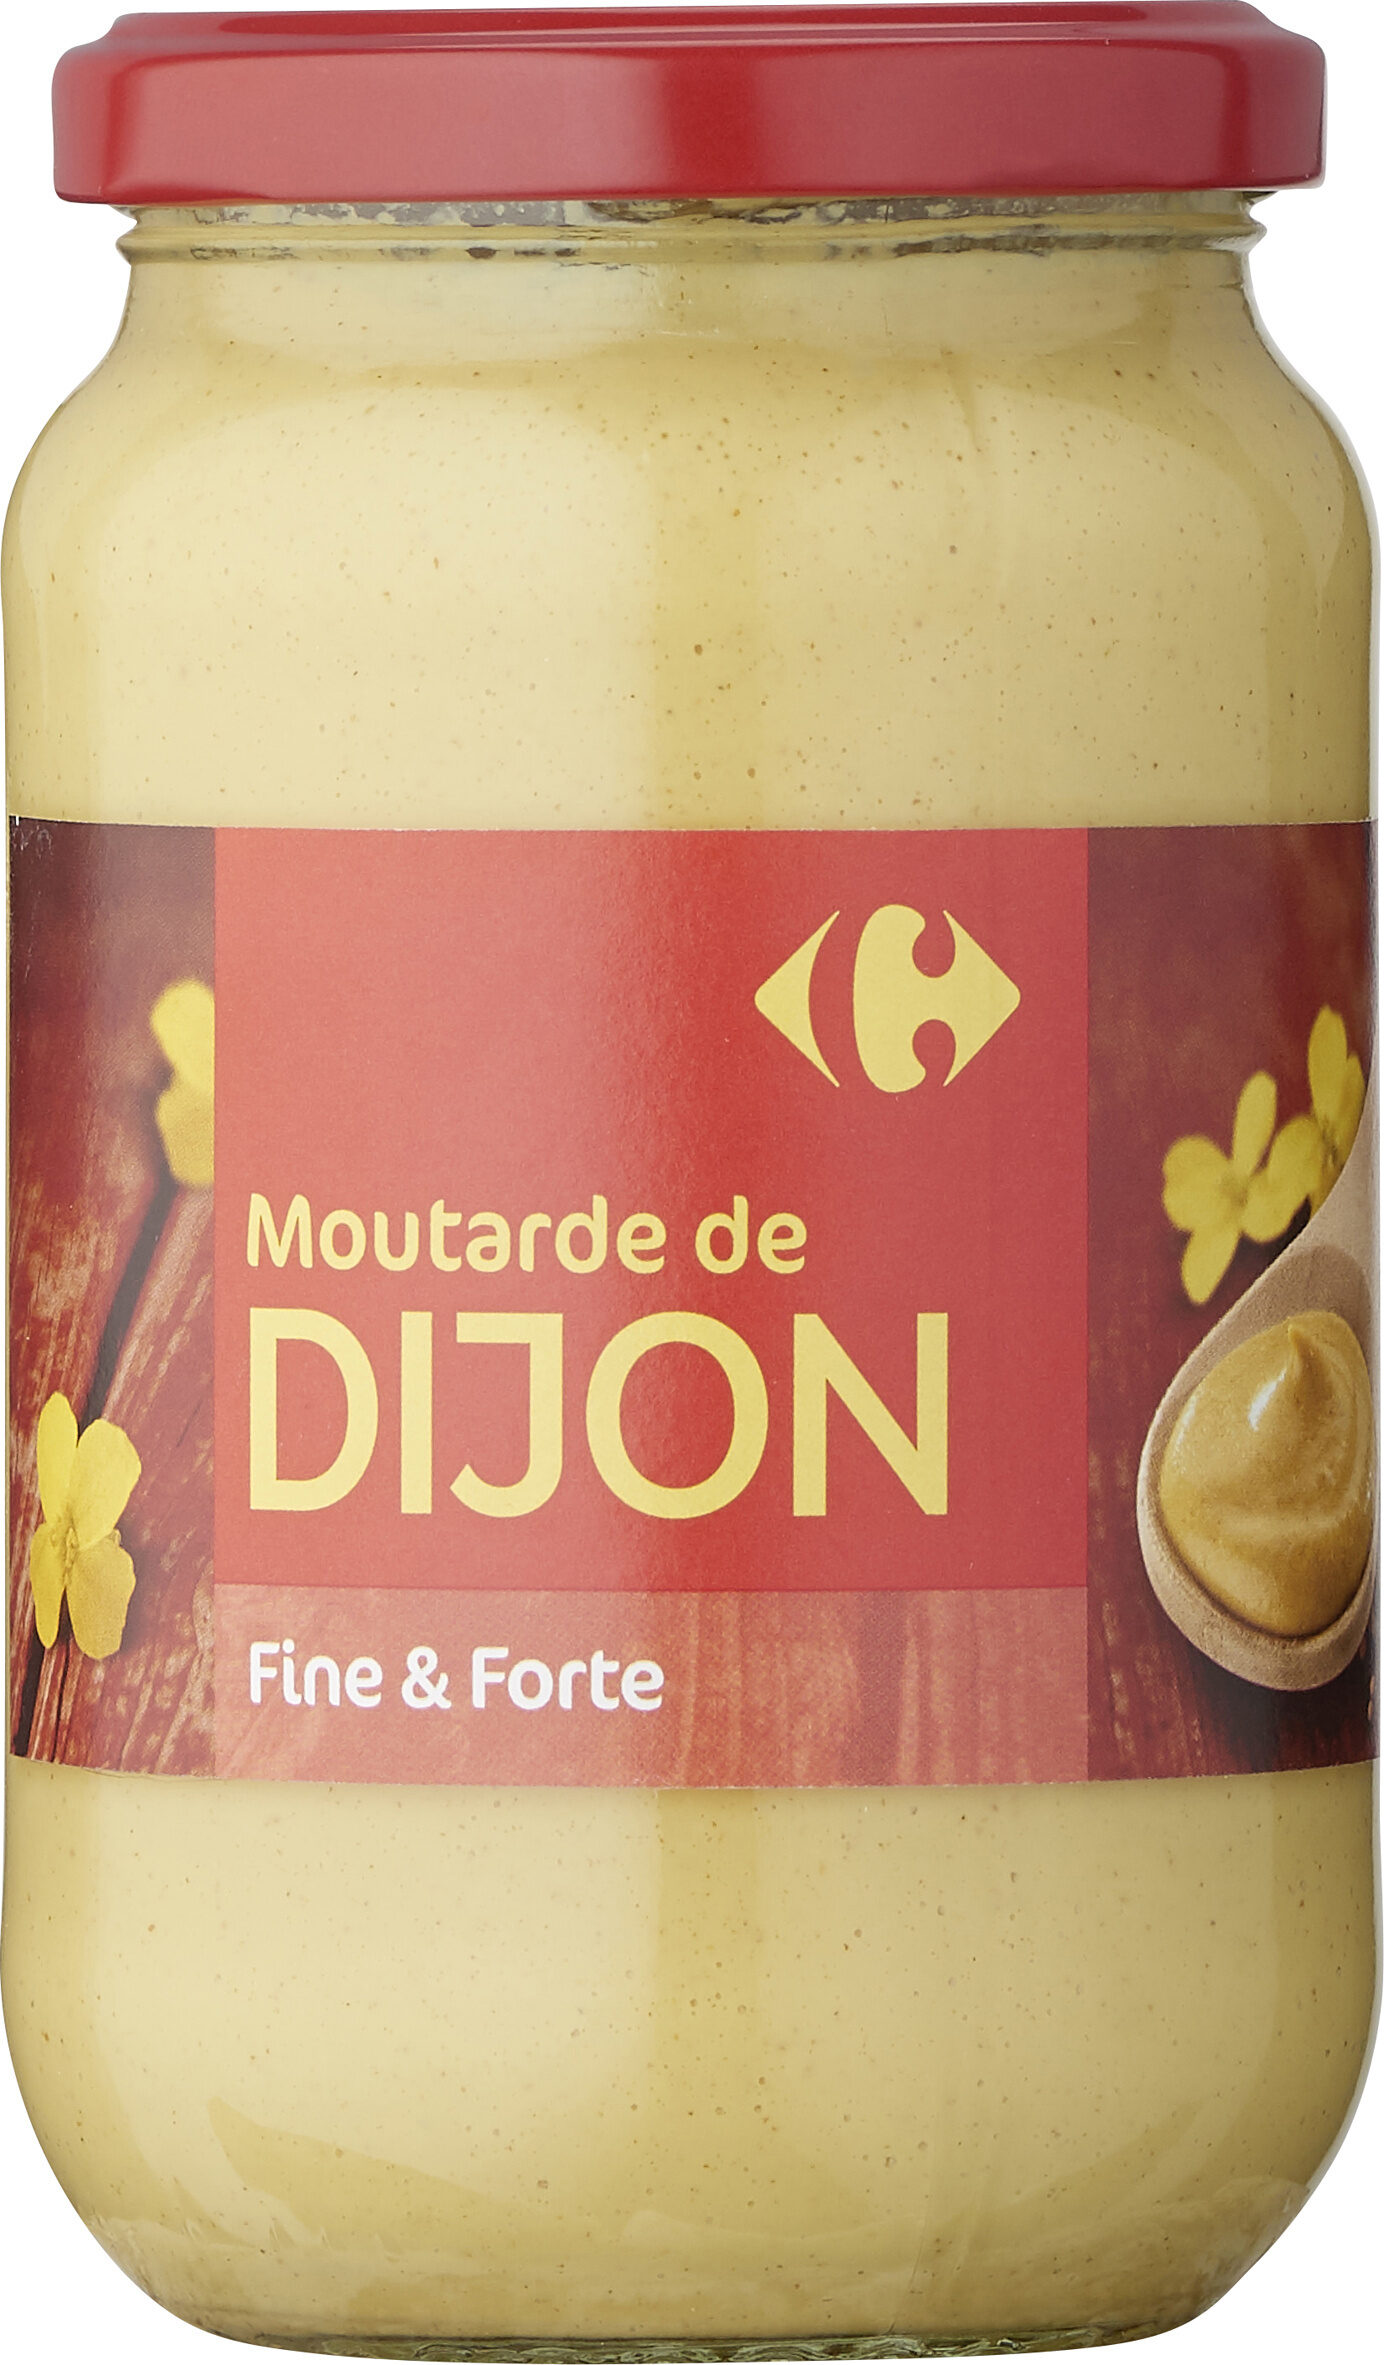 Moutarde de Dijon - Product - fr